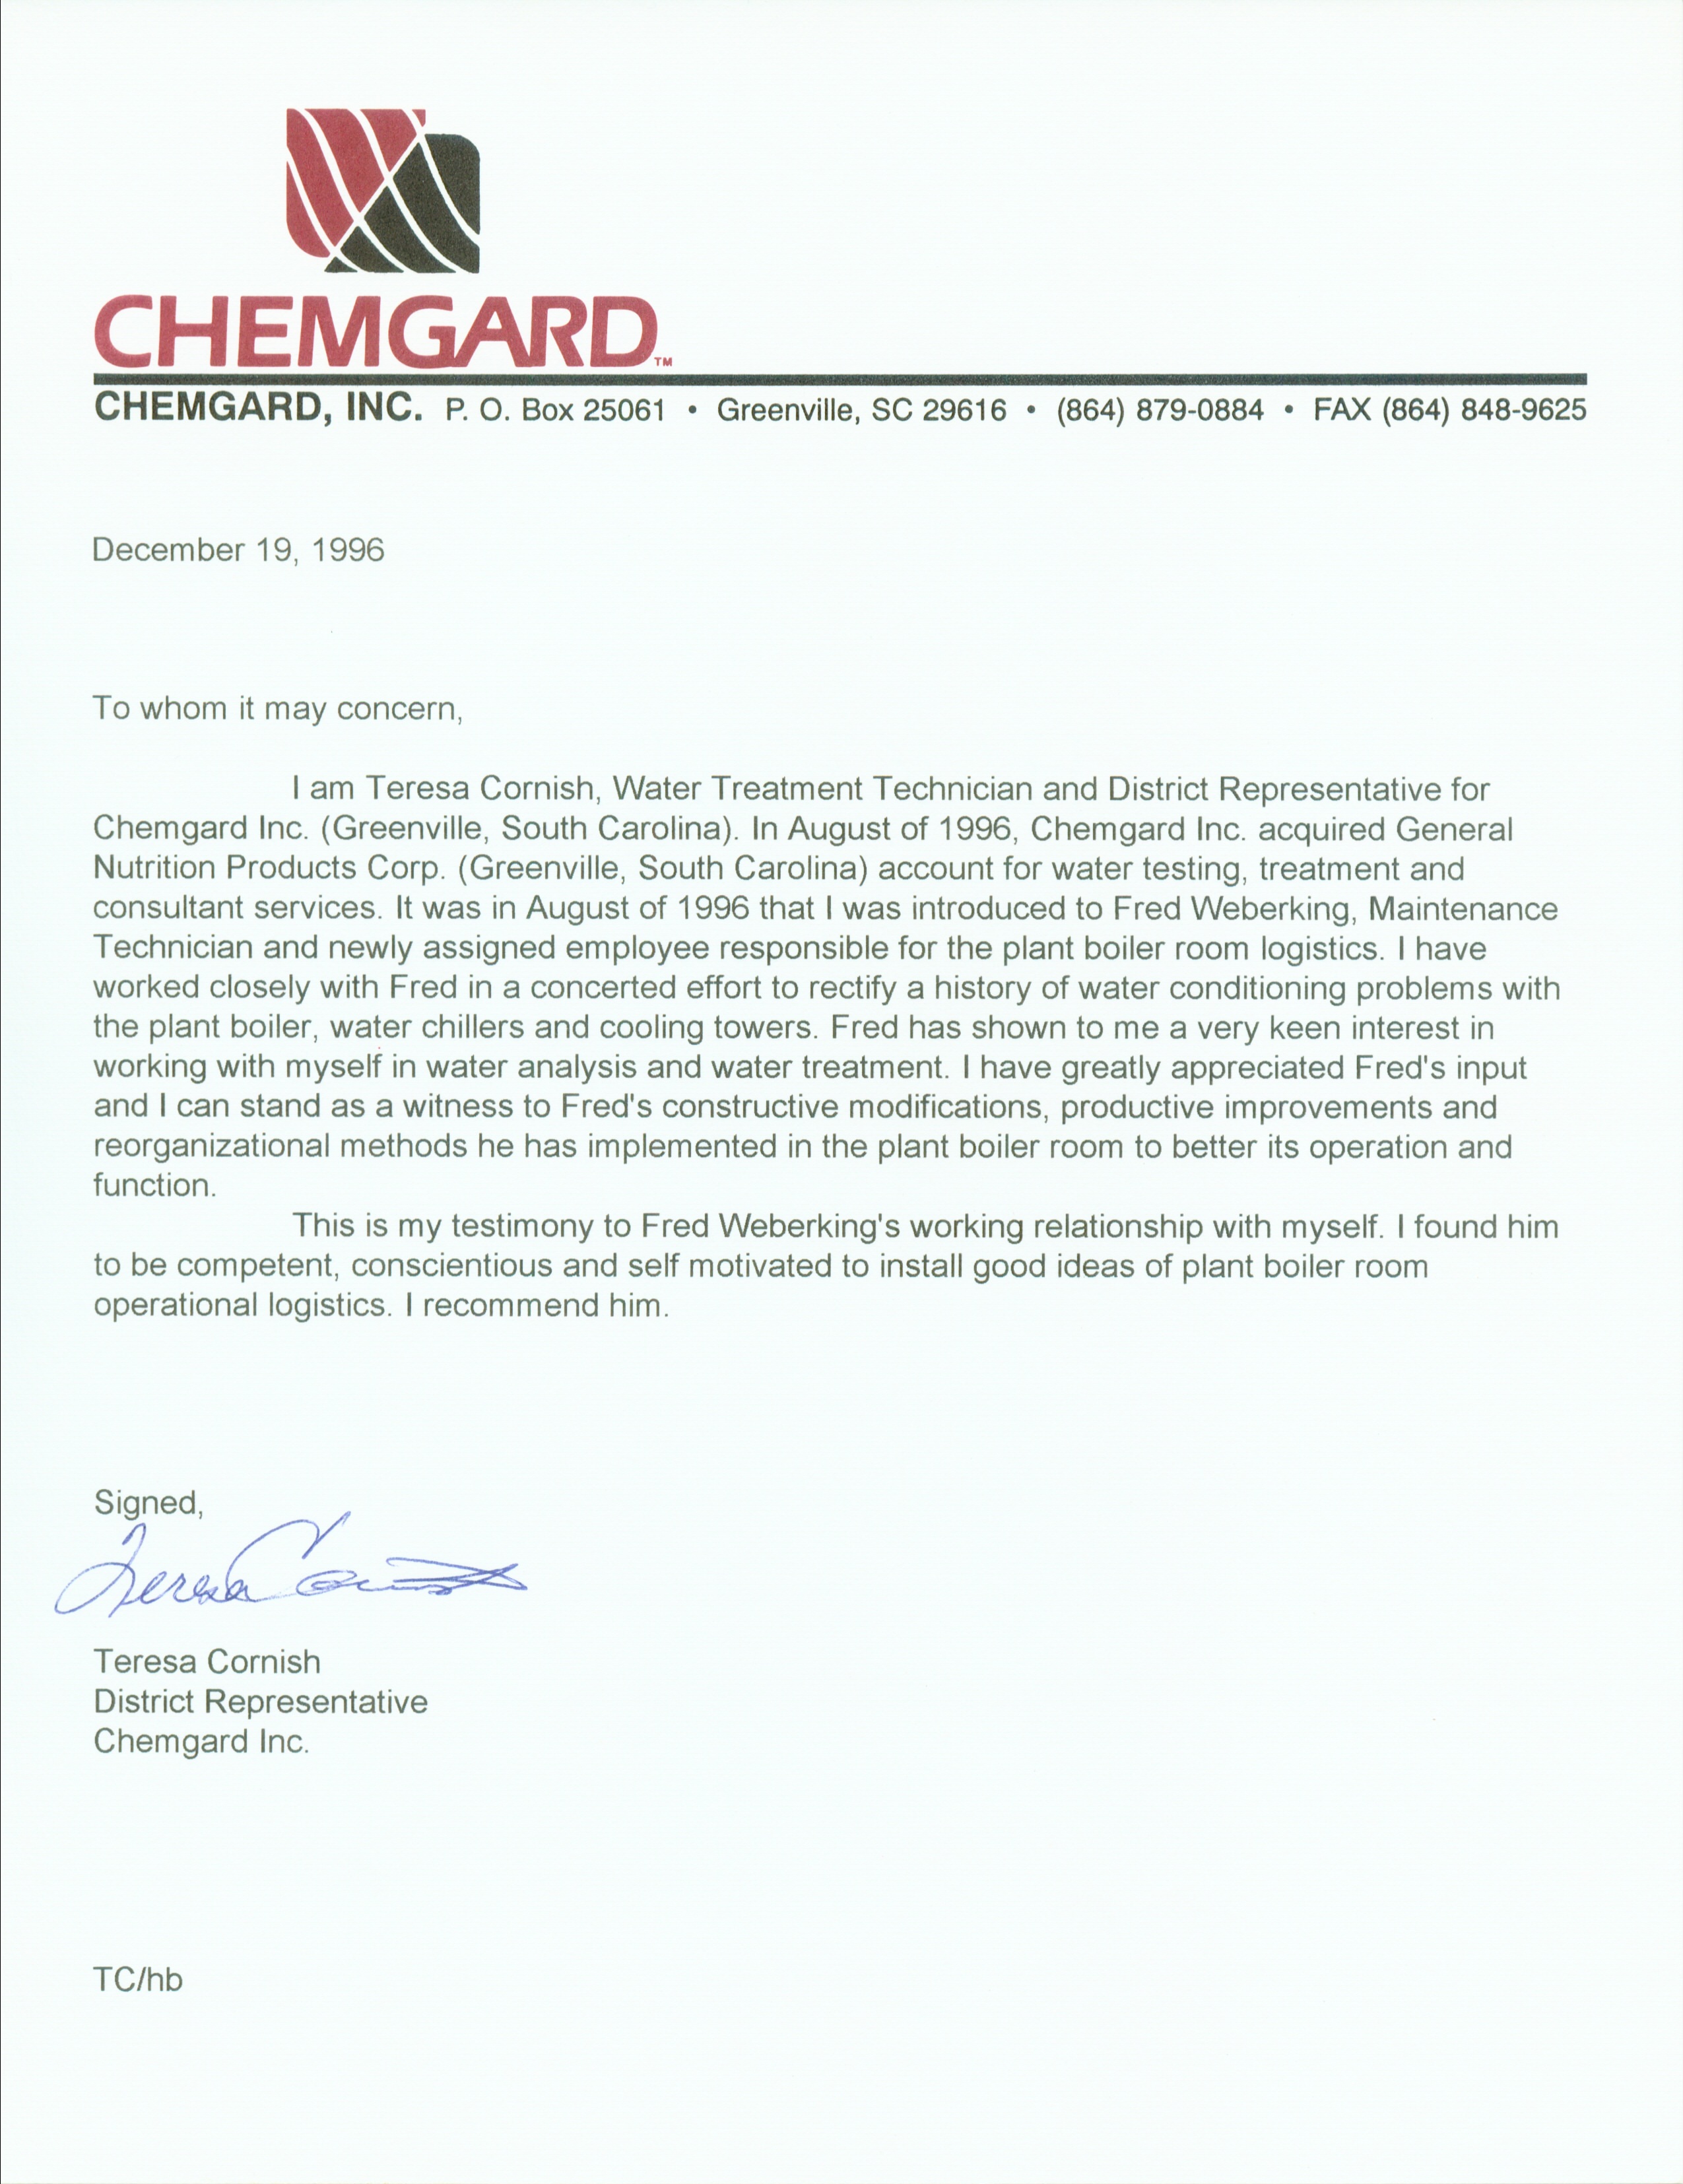 Reference Letter Chemgard - Teresa Cornish